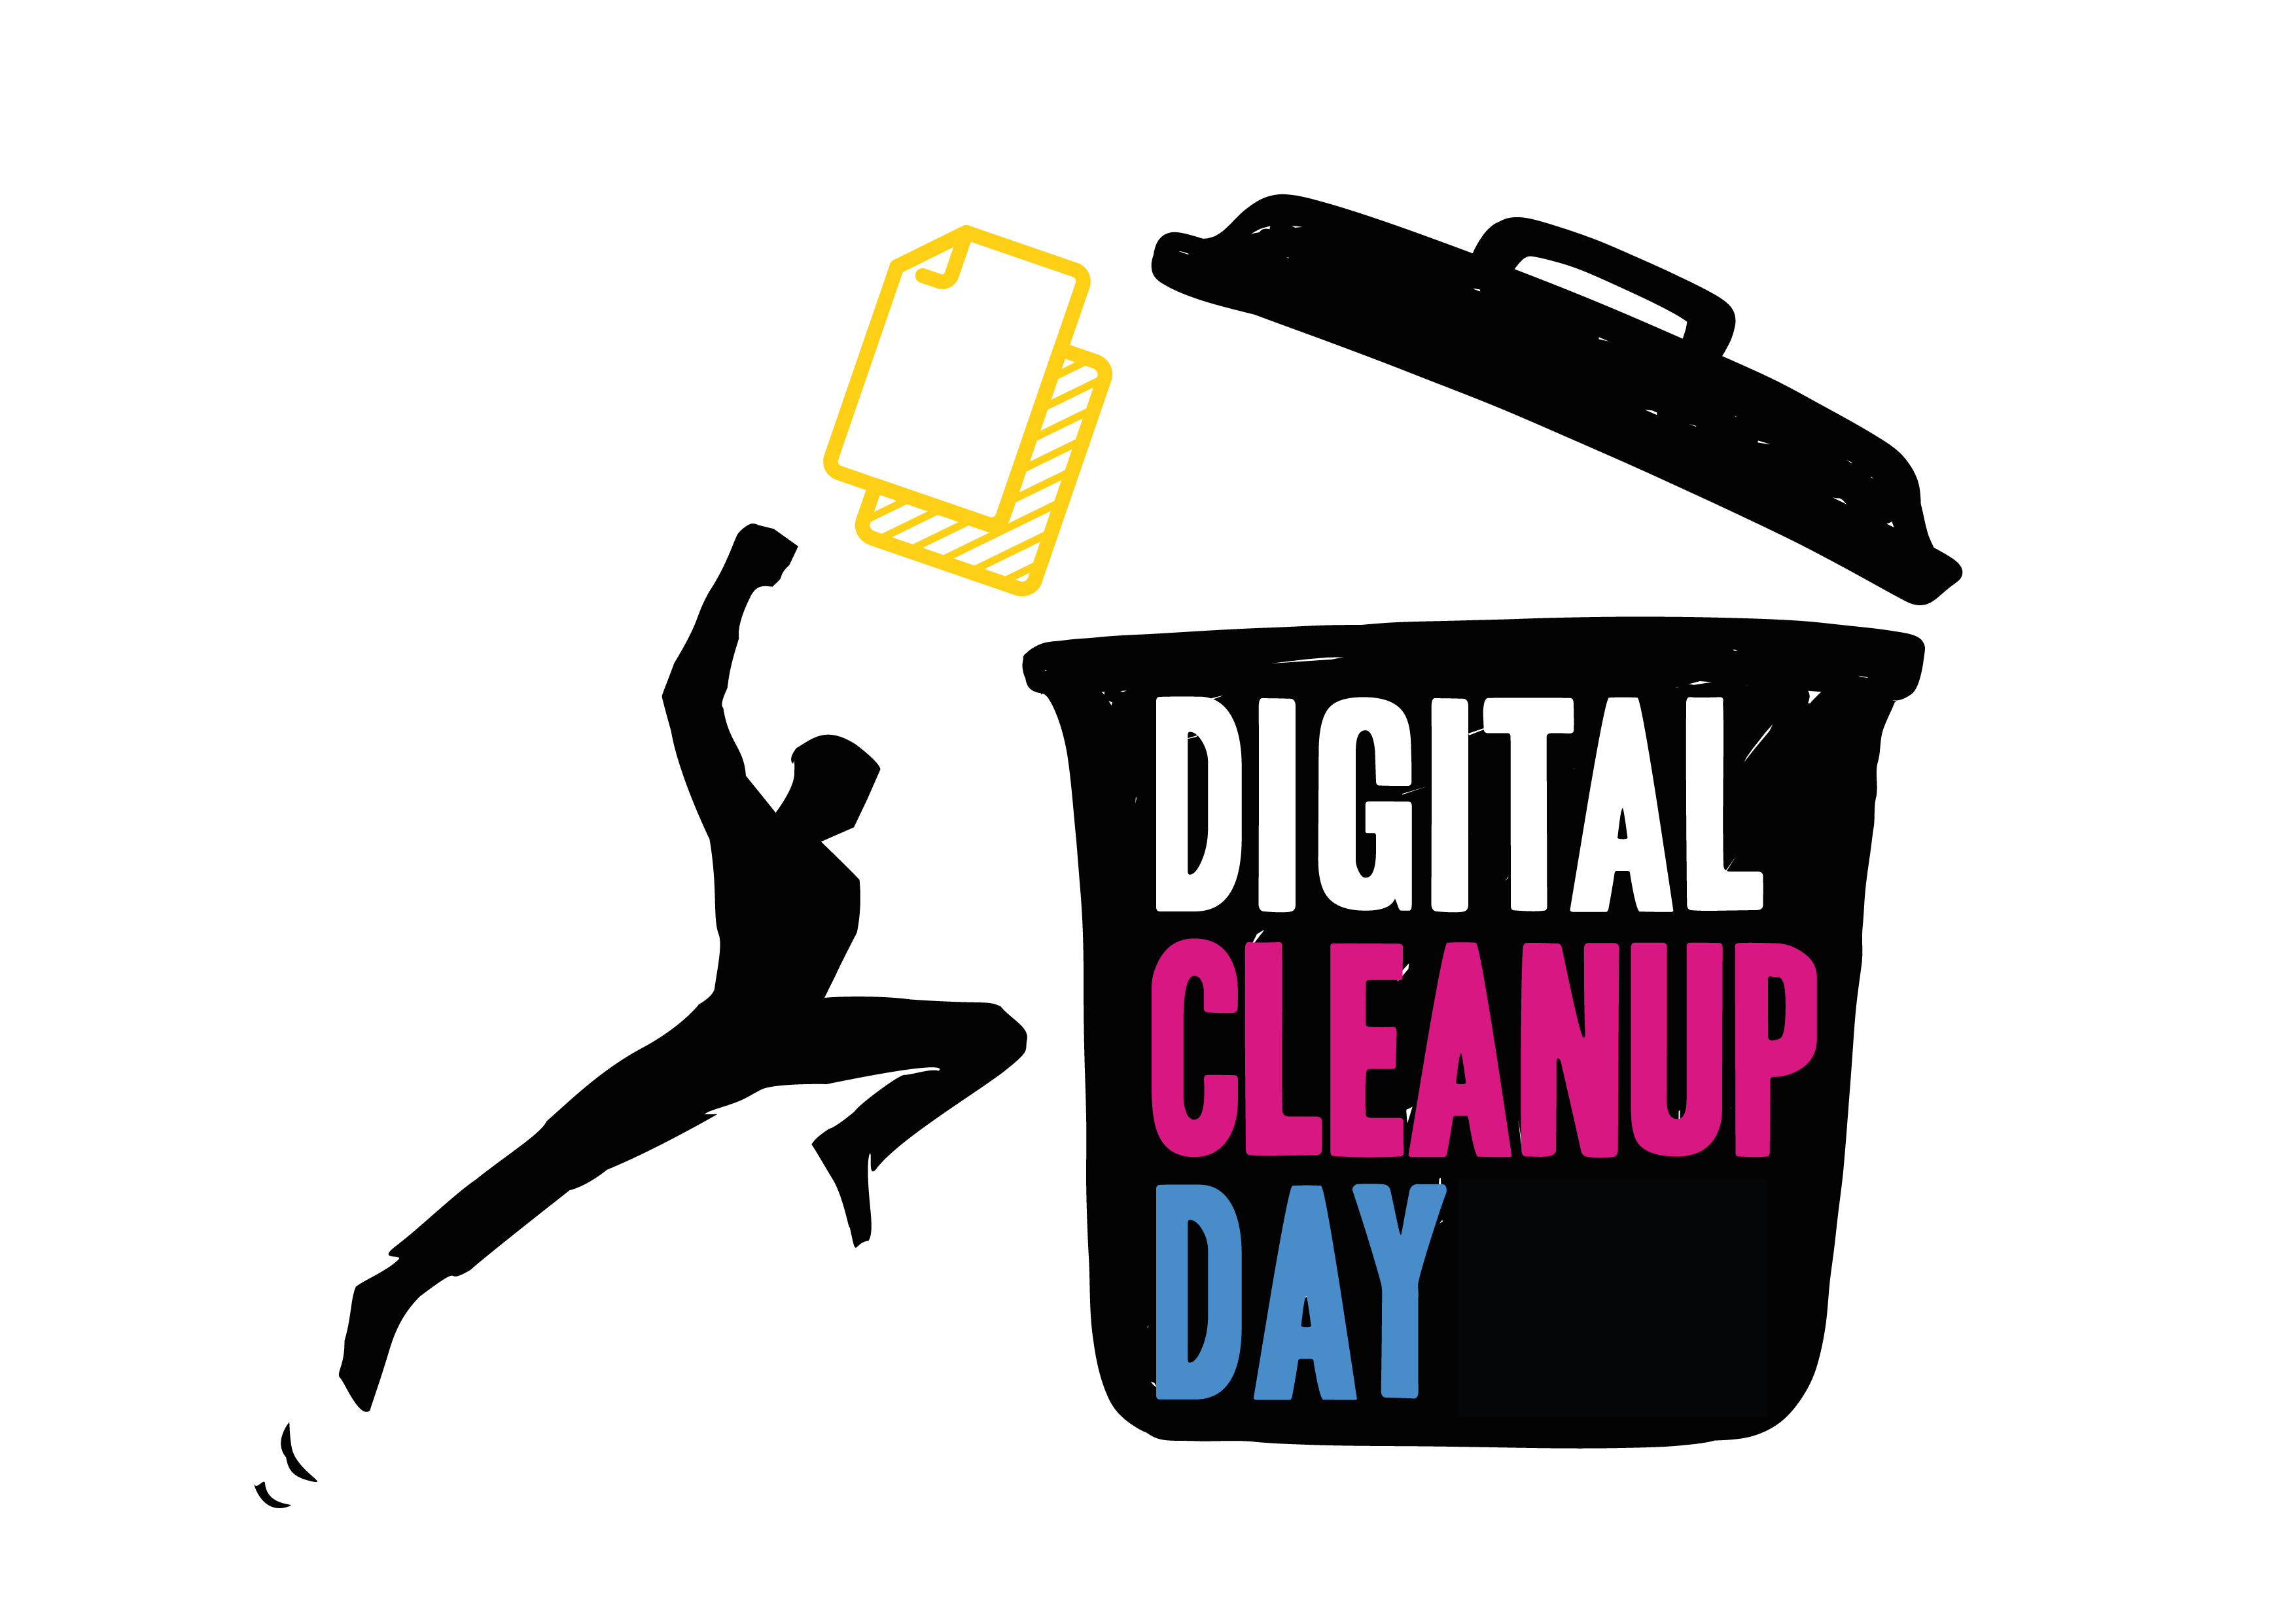 Pour en savoir plus : digital-cleanup-day.fr